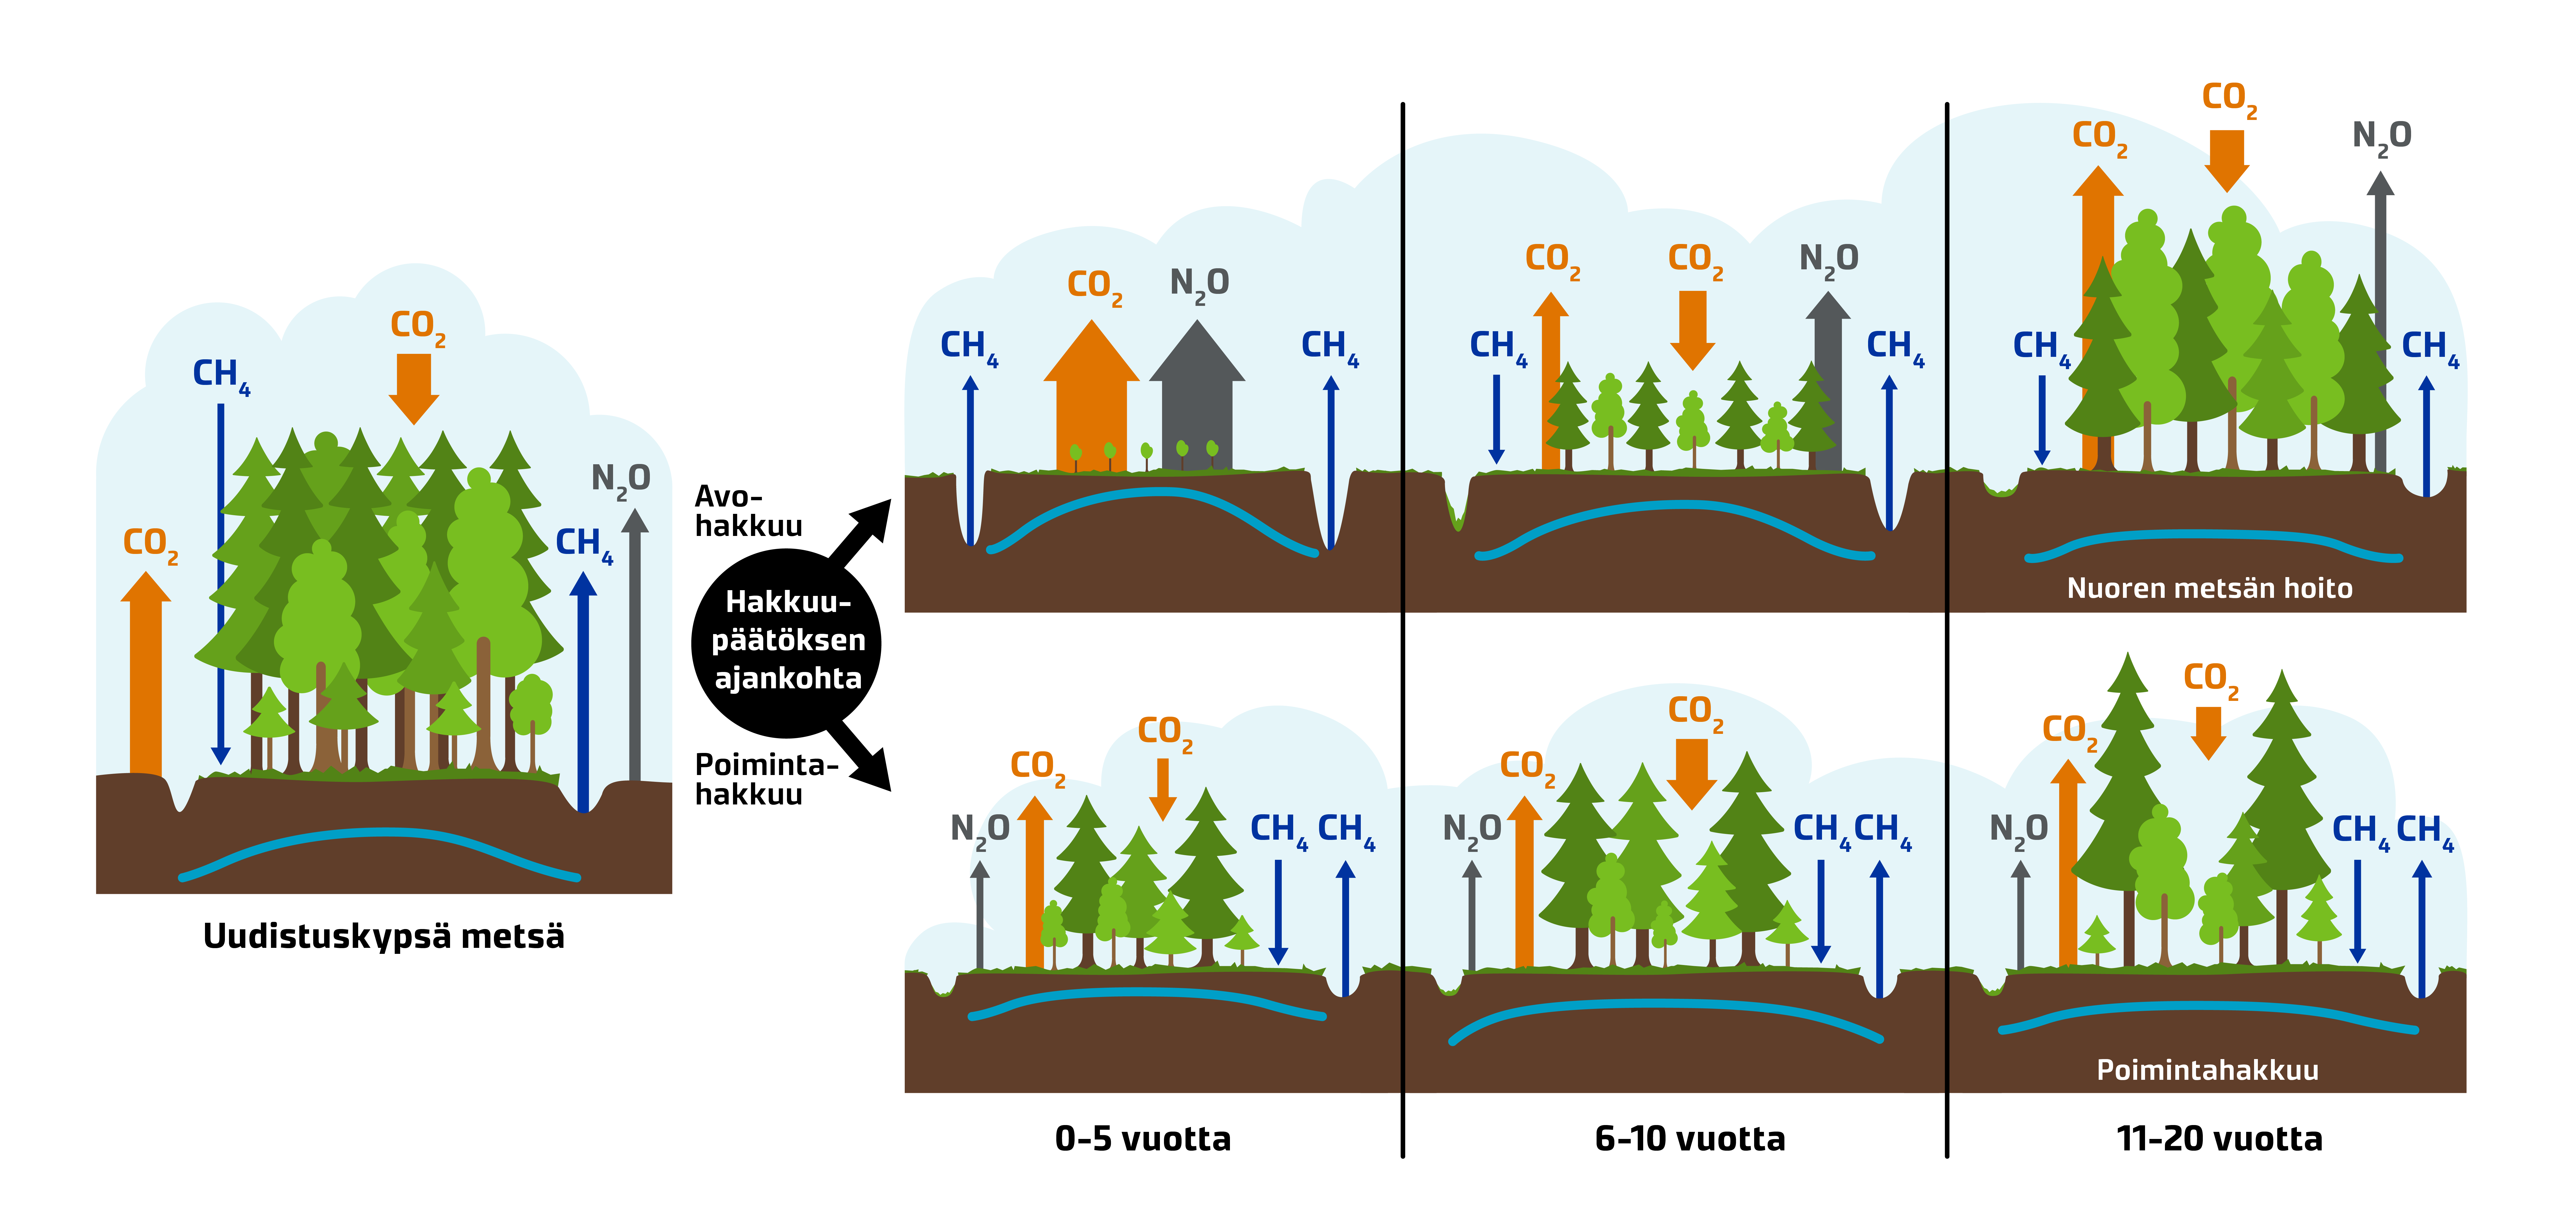 Hakkuutavan vaikutus kasvihuonekaasupäästöihin ja pohjaveden korkeuteen rehevissä ojitetuissa suometsissä. CH4 =metaani, CO2=hiilidioksidi, N2Ot=yppioksiduuli  (Piirros: Luke)  